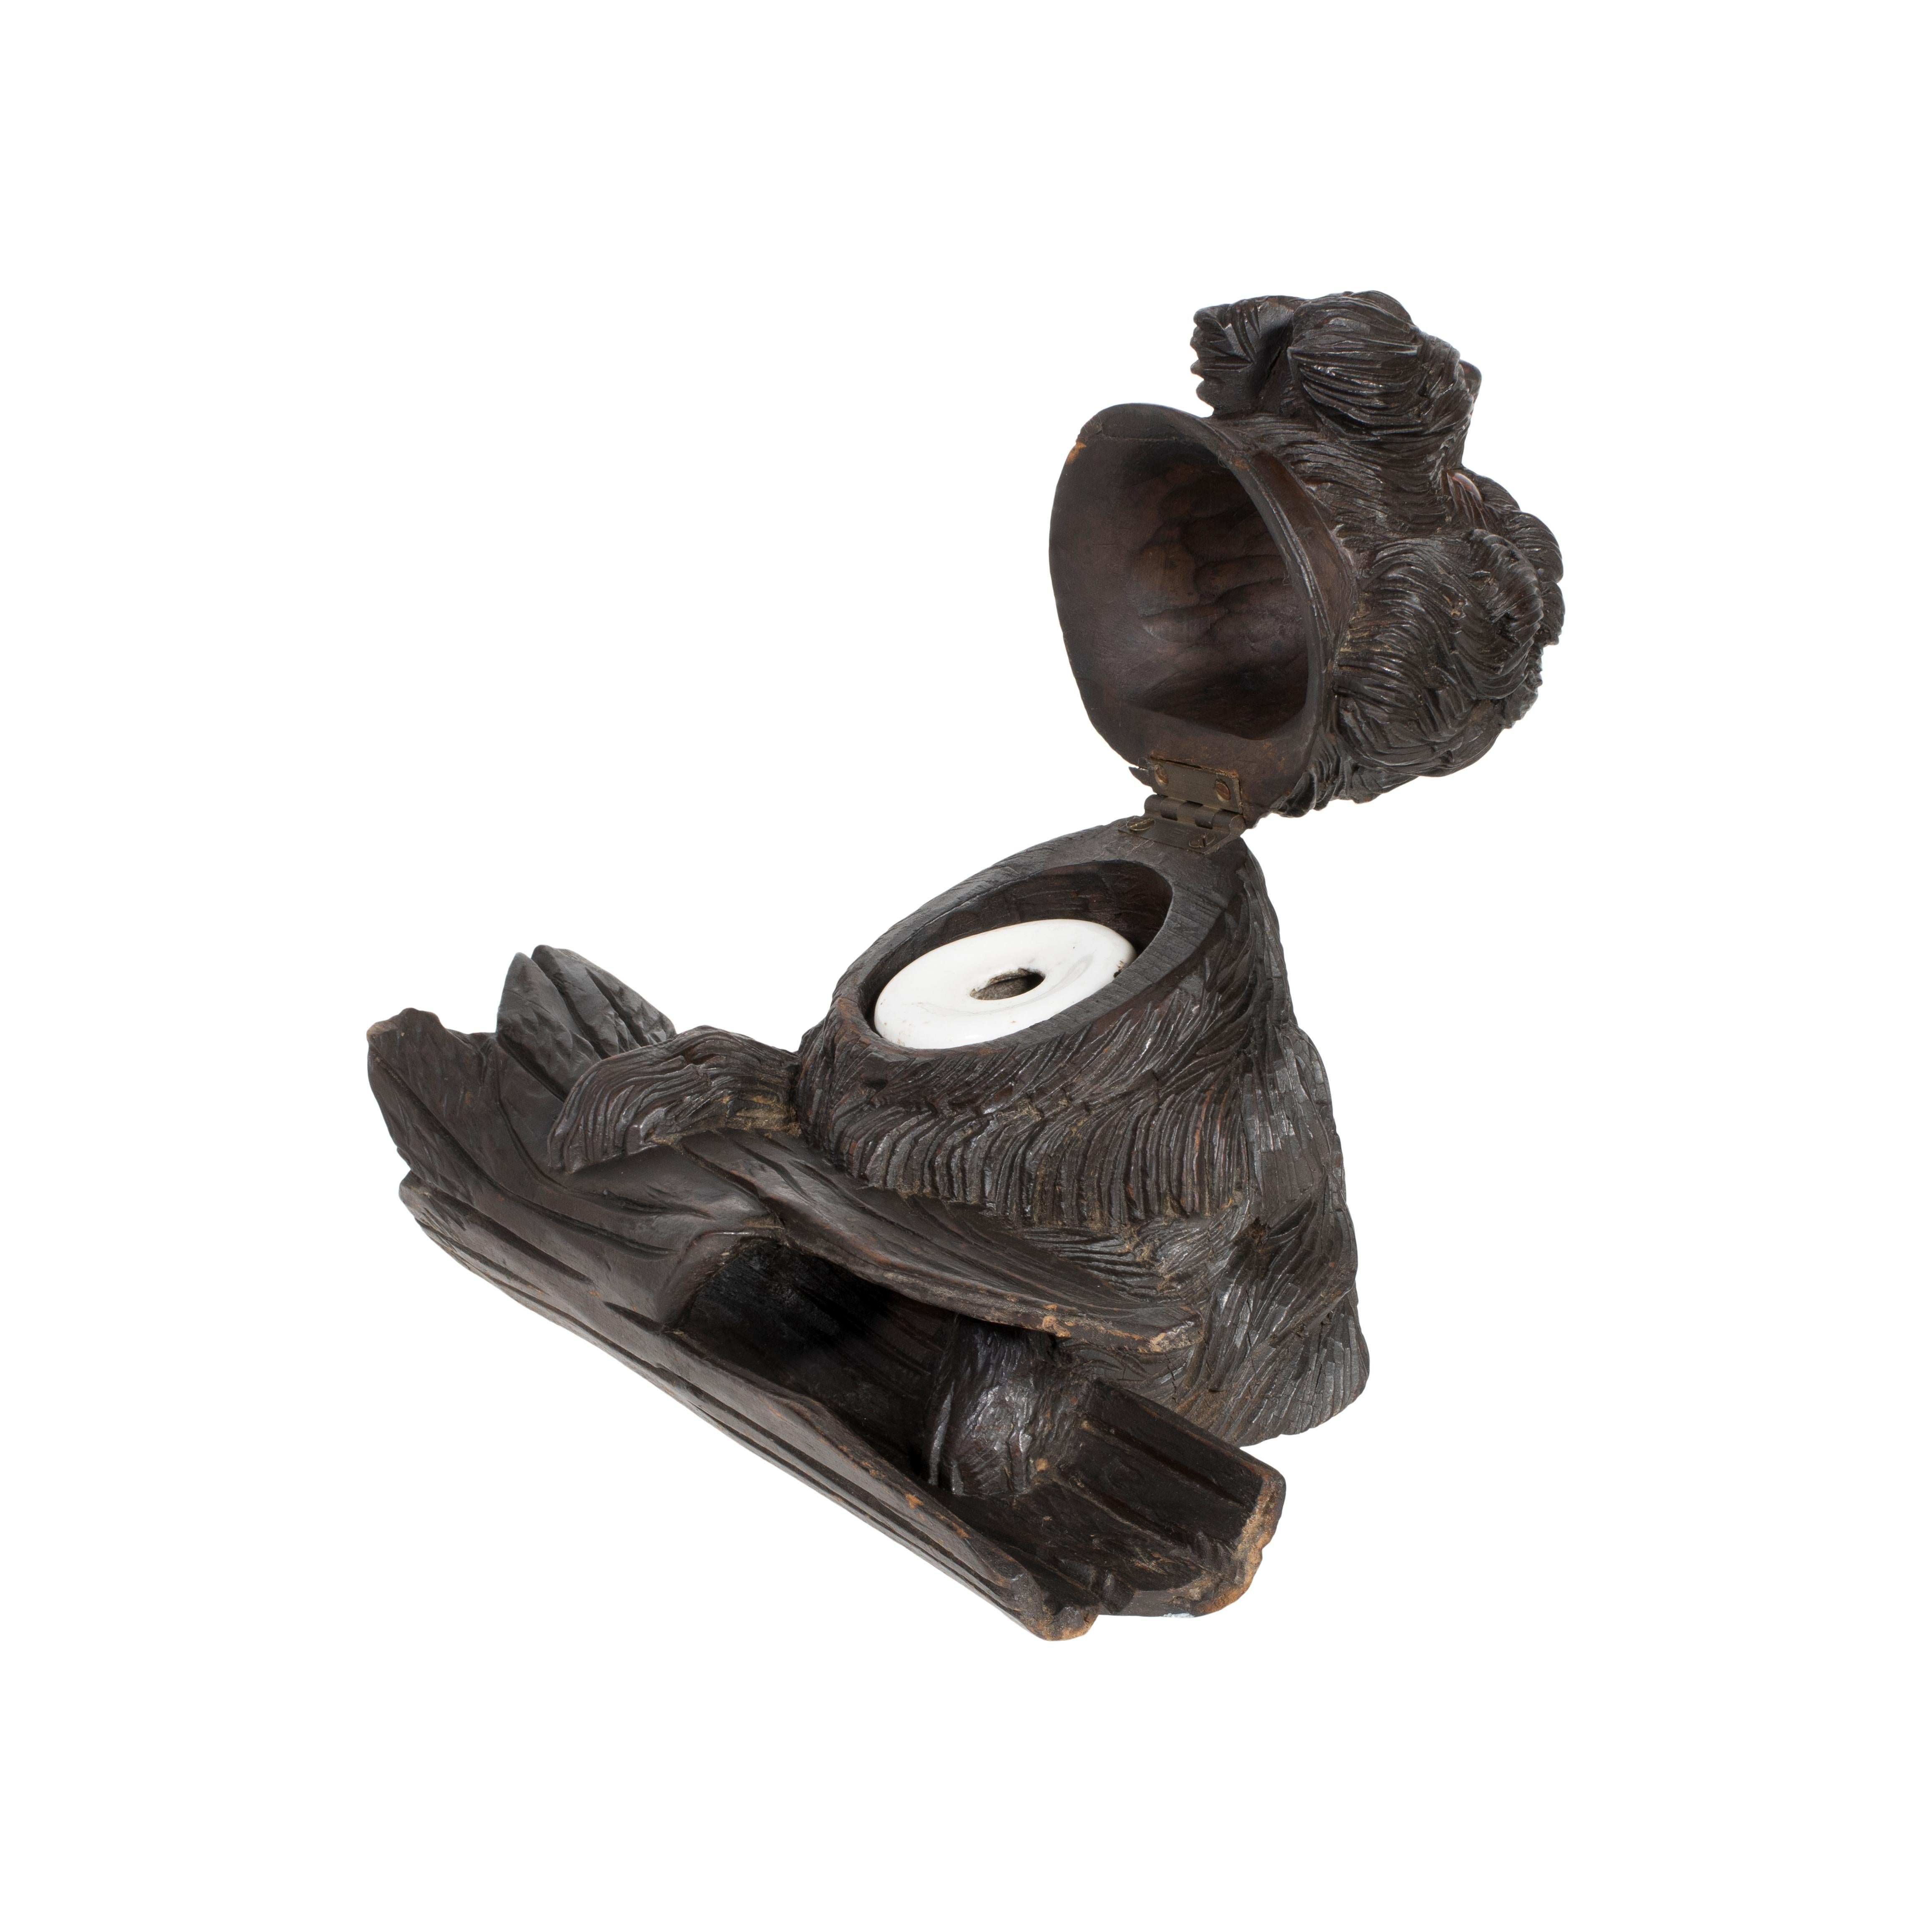 Schwarzwälder Zottelhund Tintenfass mit Stifthalter, geschnitzt in der Schweiz. In den 1800er Jahren begann die Holzschnitzerei in der Schweiz in der Stadt Brienz. Gegen Ende des 19. Jahrhunderts war sie zur treibenden Kraft dieser Industrie